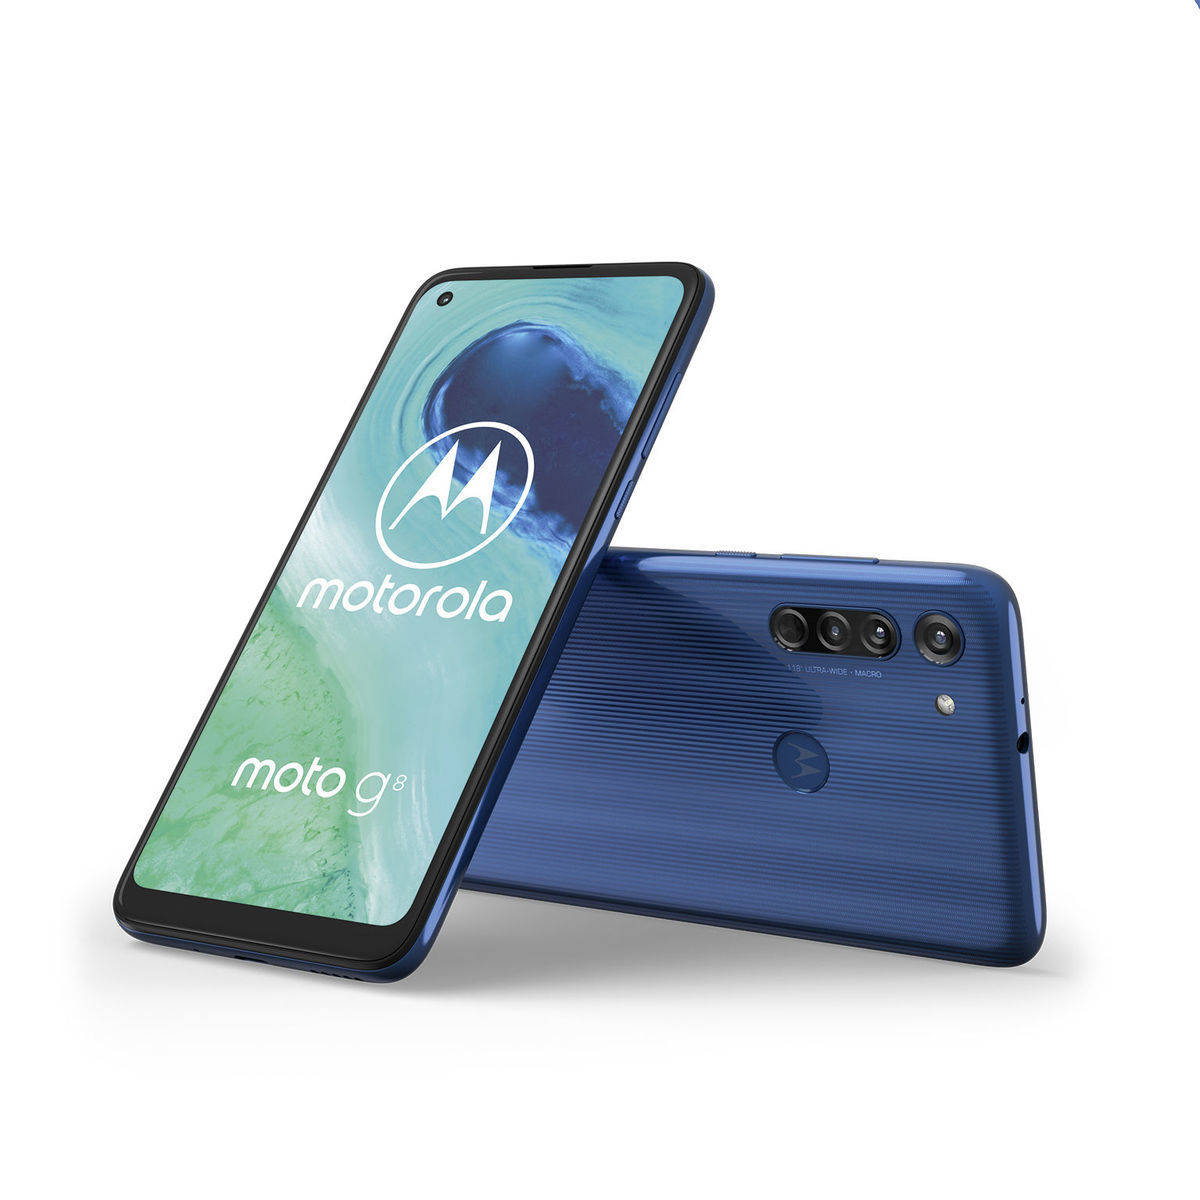 Mit dem neuen moto g8 bietet Motorola unter 200 Euro ein Android-10-Smartphone an.